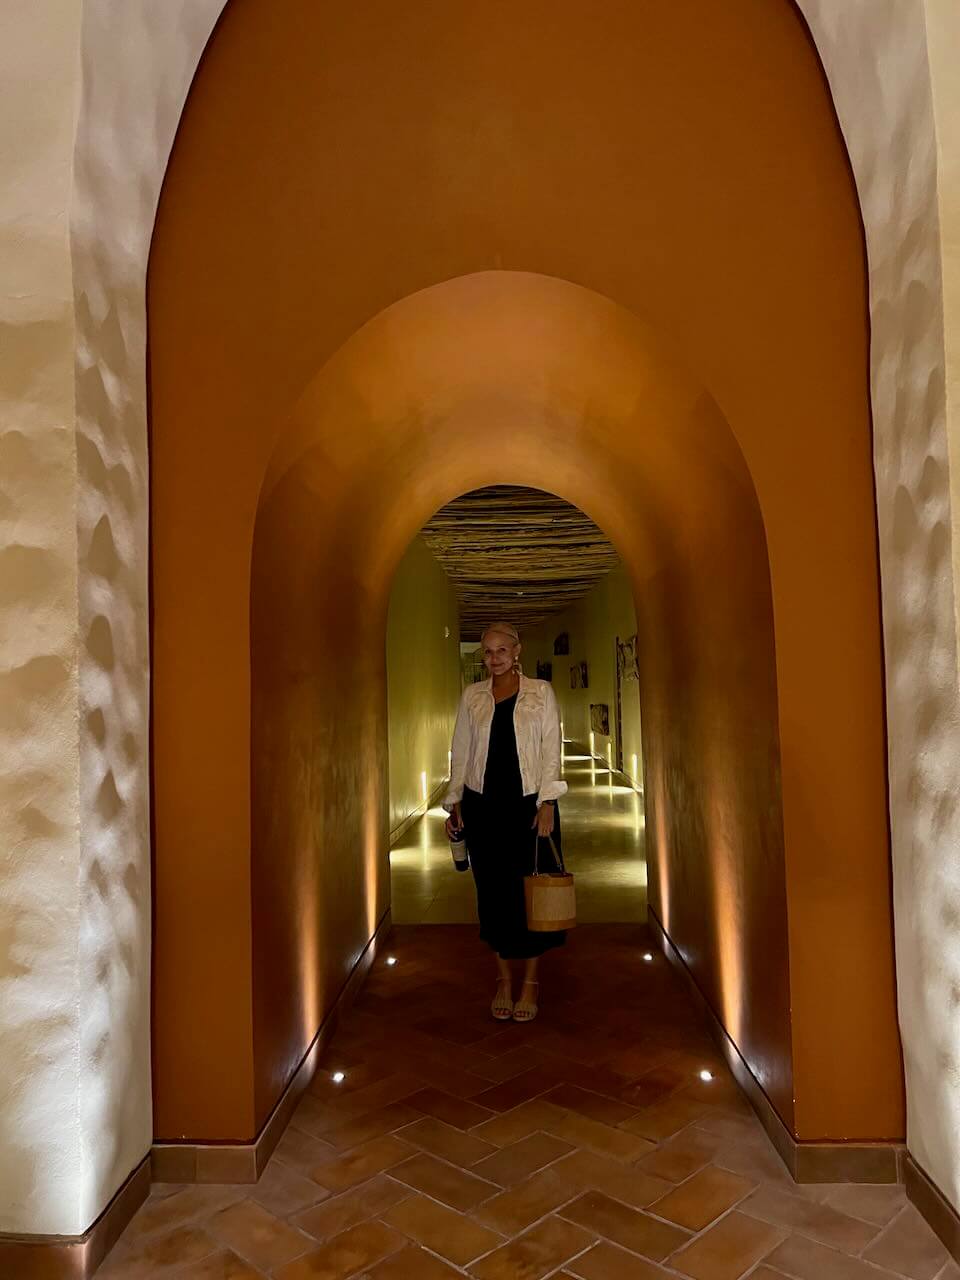 The wine cellar at Hotel La Casa de la Playa in Mexico.